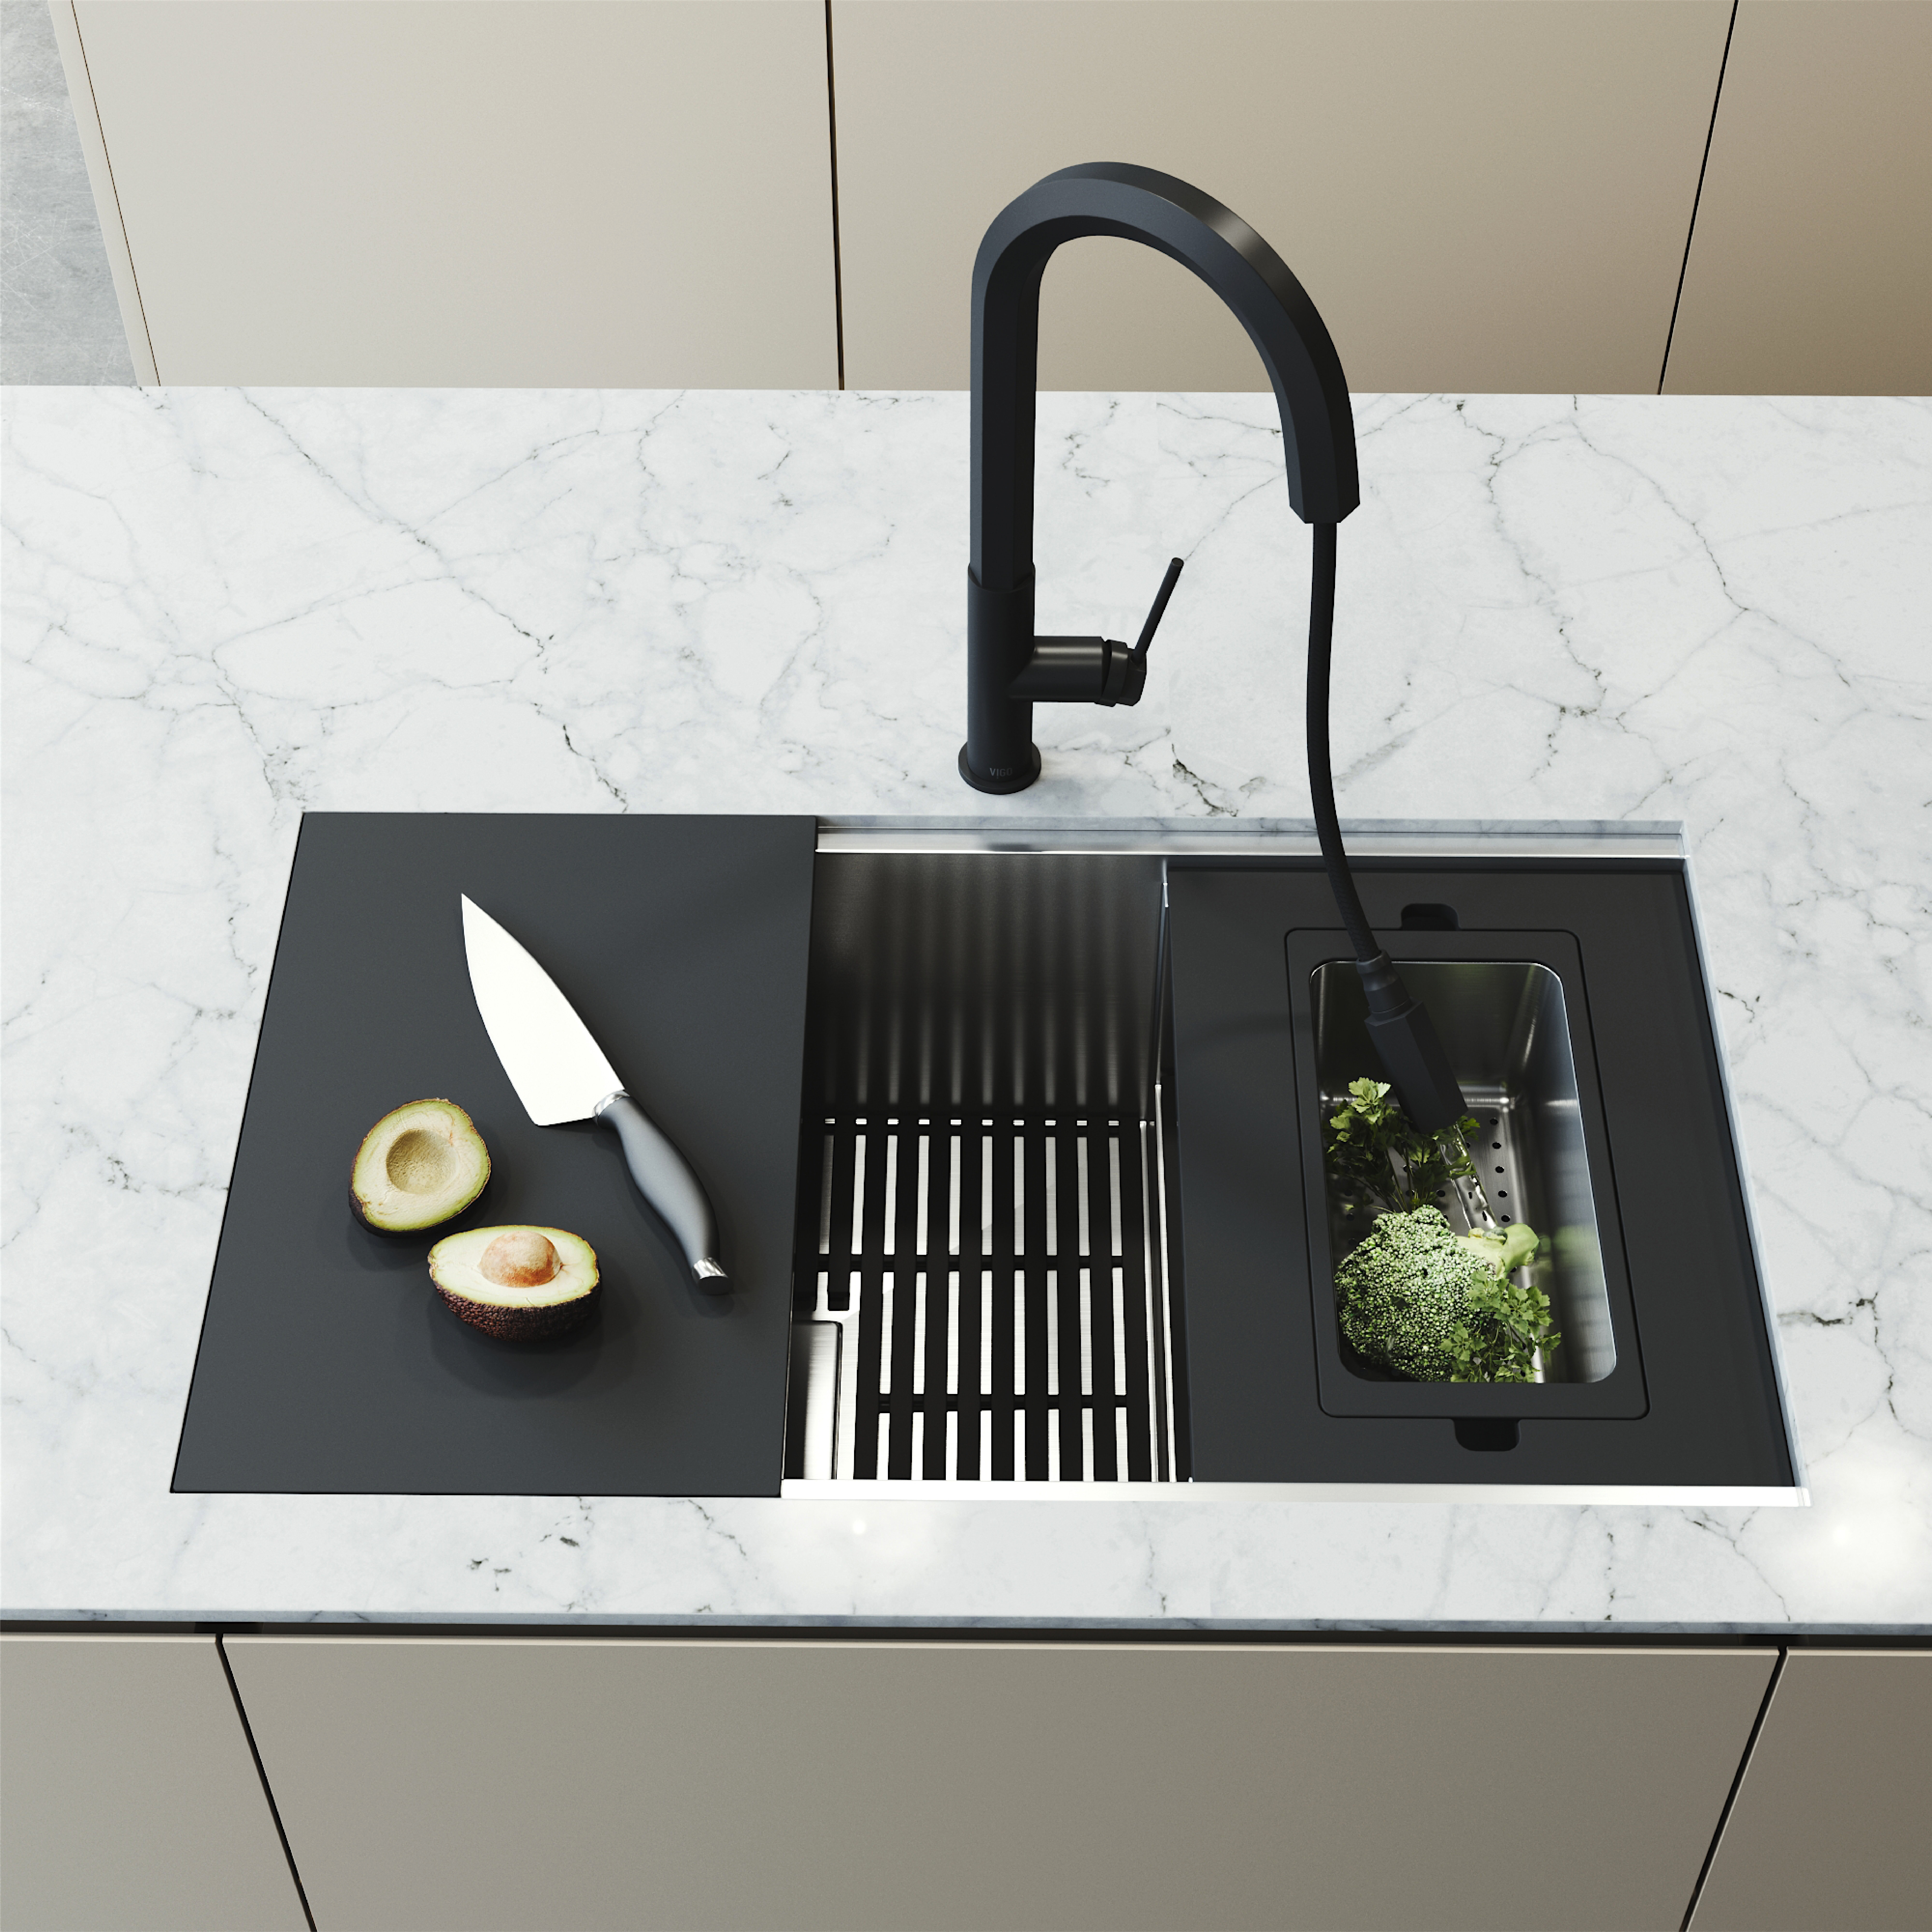 https://assets.wfcdn.com/im/05525825/compr-r85/2065/206563339/hampton-32-l-x-17-w-undermount-kitchen-sink-with-accessories.jpg